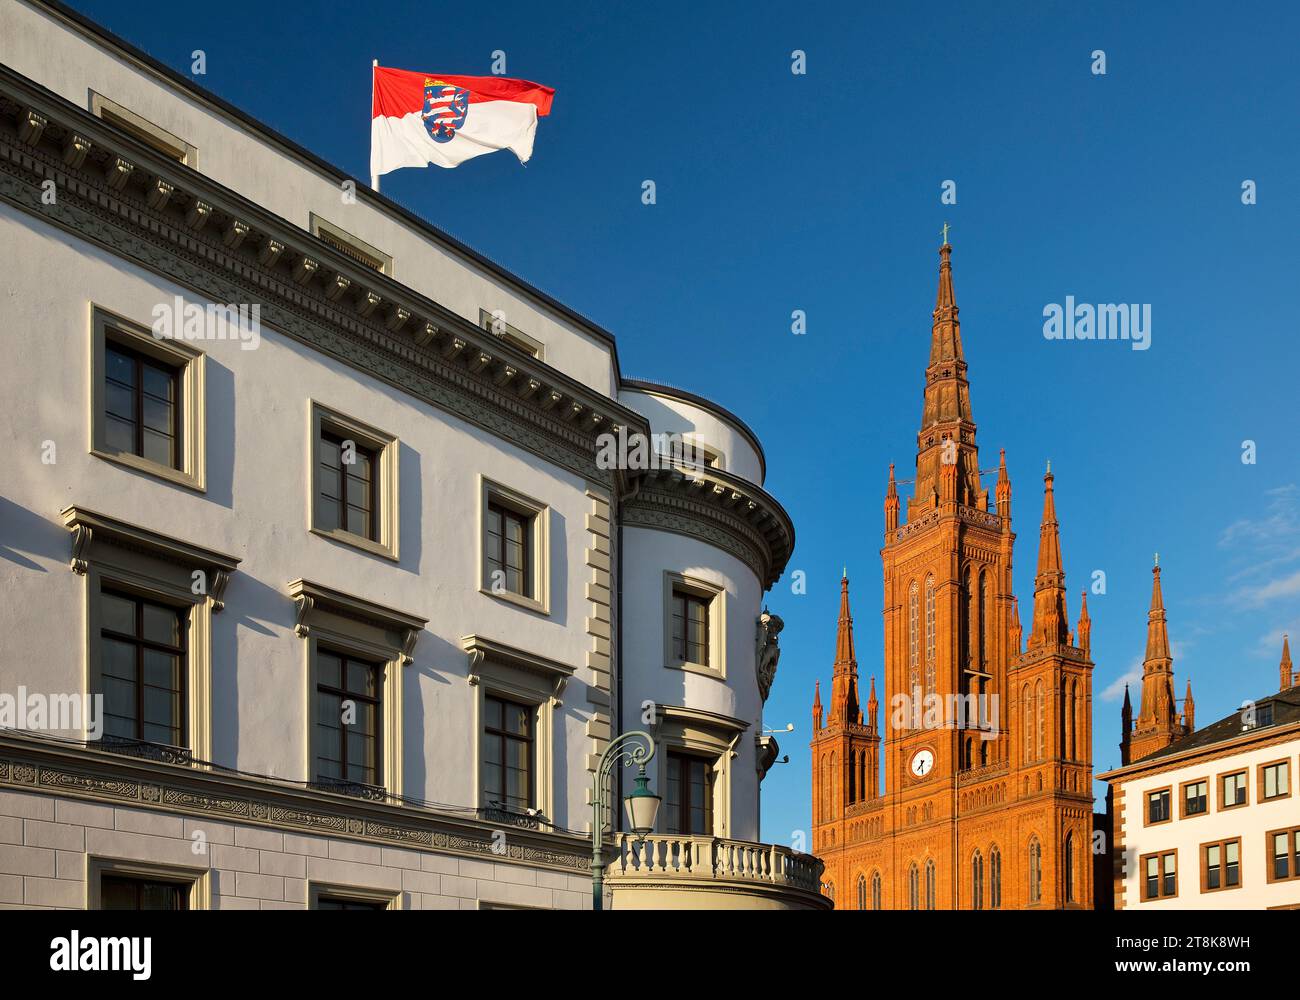 Hessischer landtag mit Landesflagge in der ehemaligen Nassauer Burg und Kirche Marktkirche, Deutschland, Hessen, Wiesbaden Stockfoto